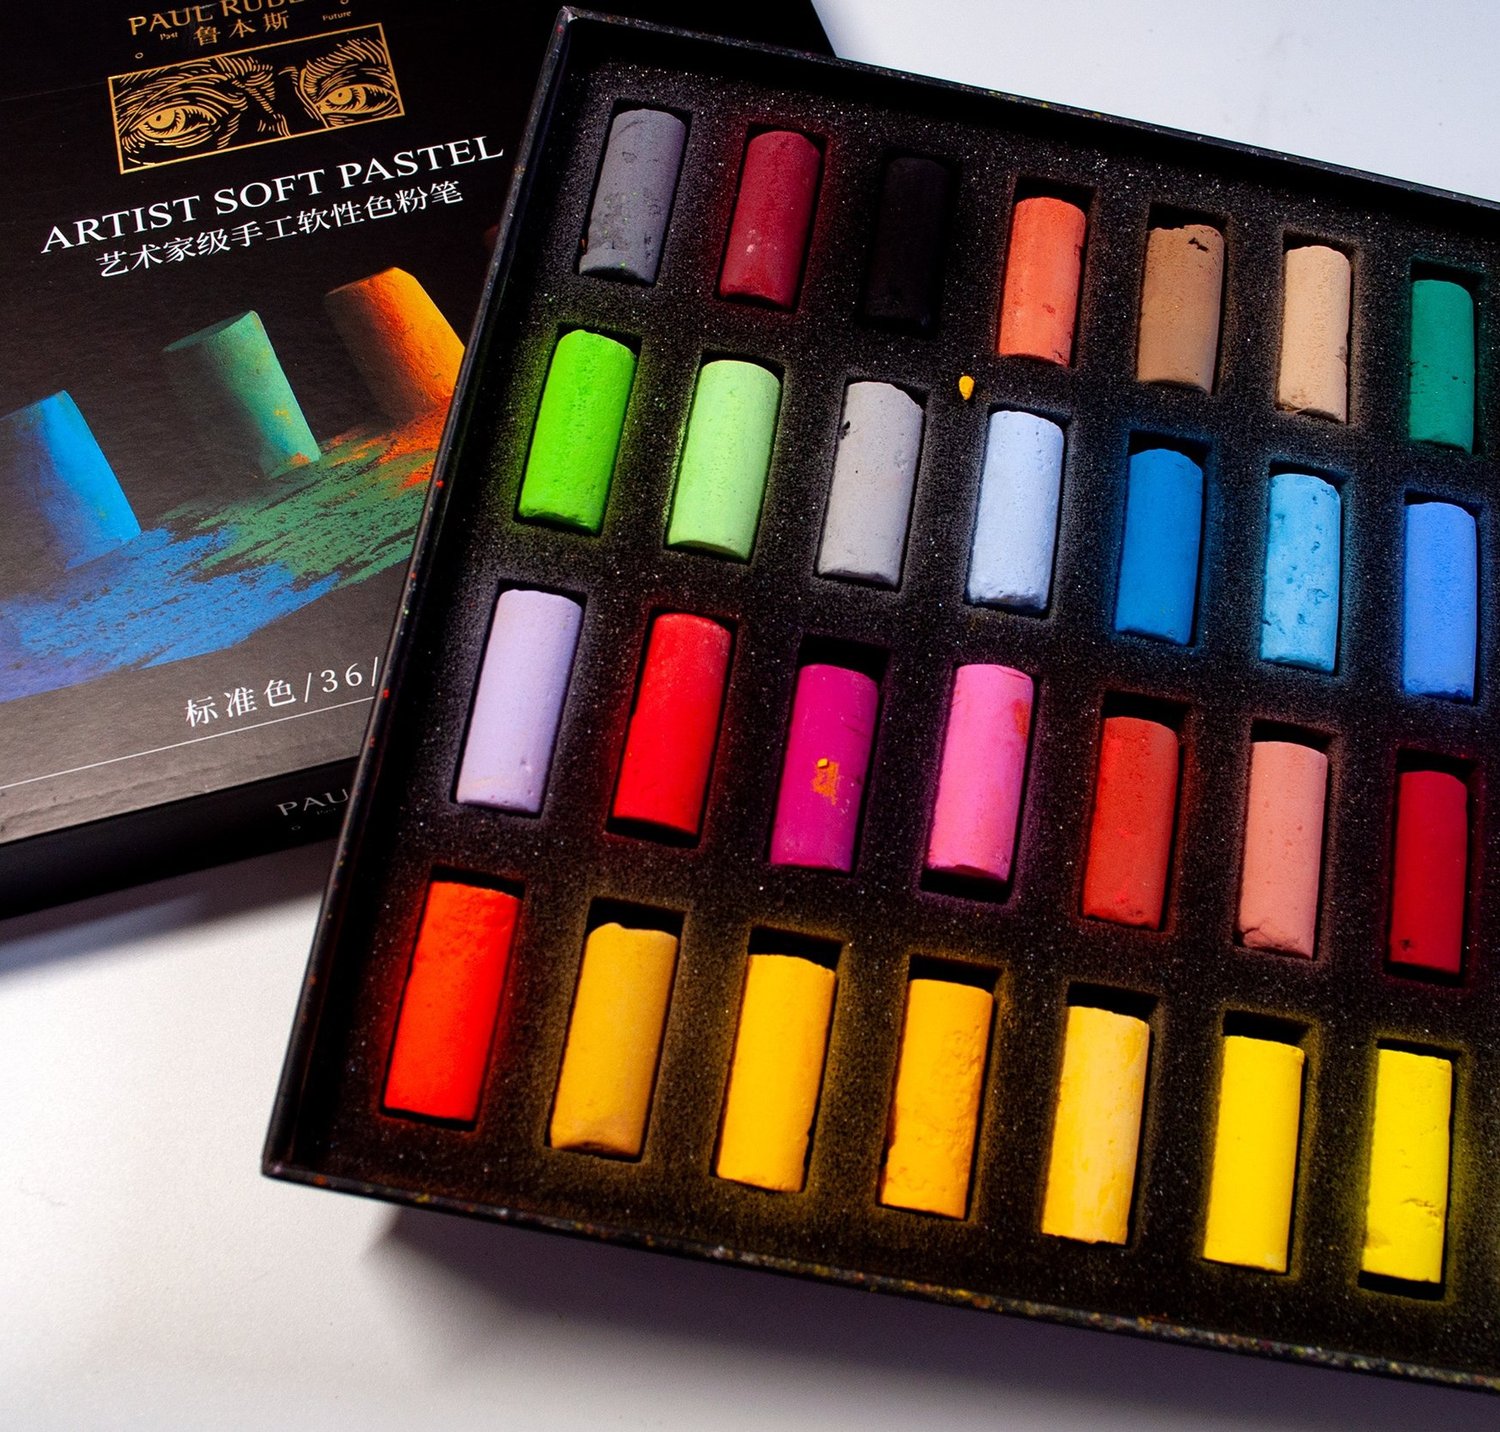 Arrtx Soft Pastels Art Supplies, 48 Assorted Colors Chalk Pastels